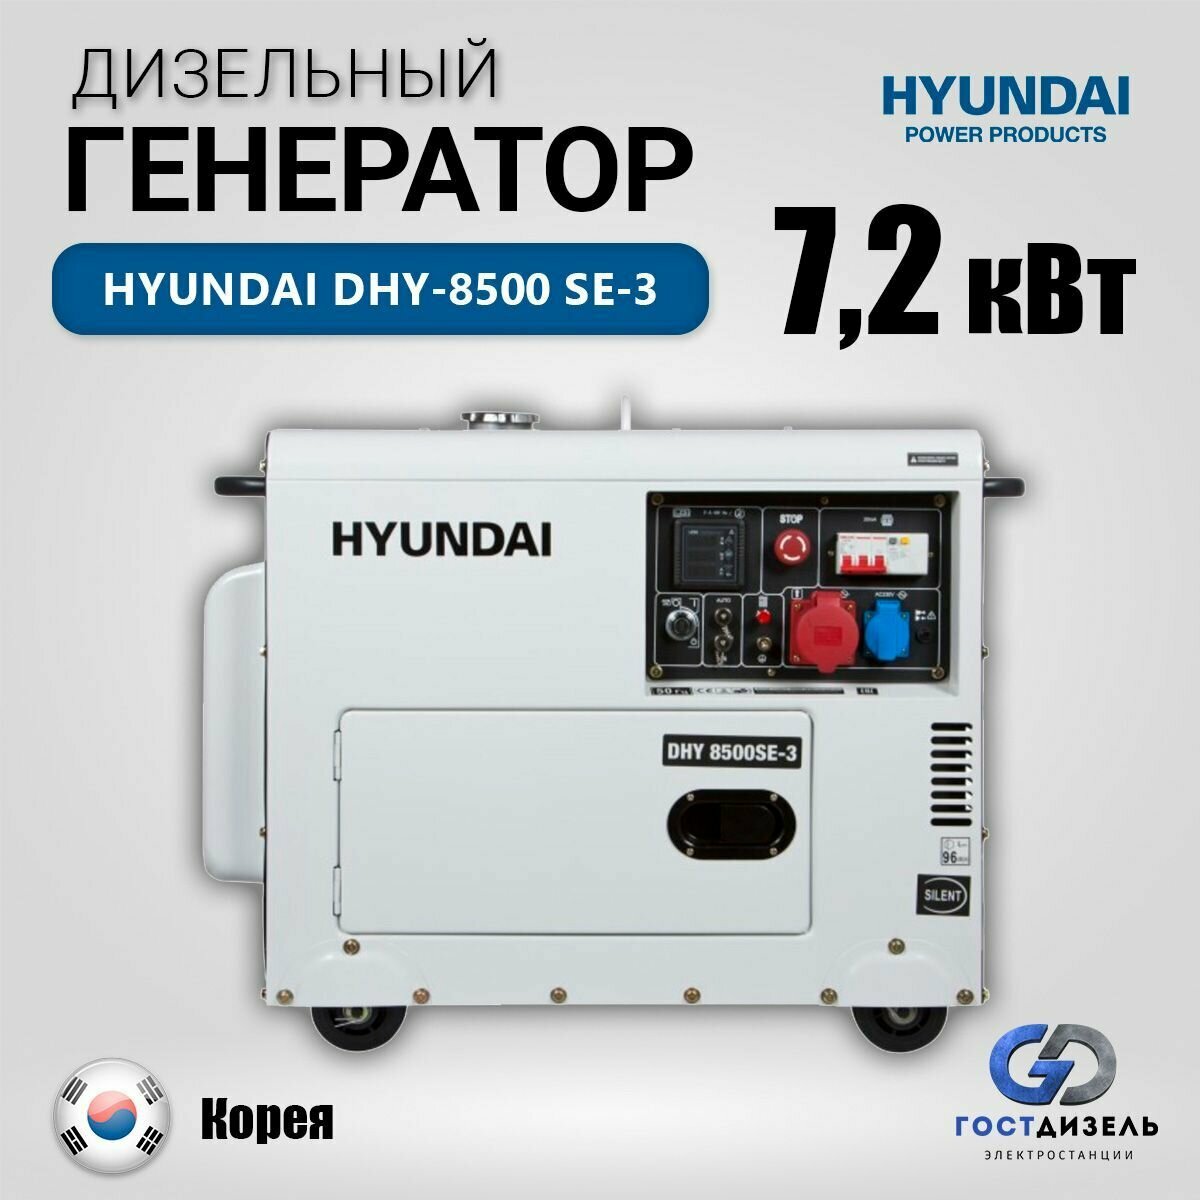 Дизельный генератор Hyundai DHY-8500 SE-3, (7,2 кВт) в кожухе на колёсах